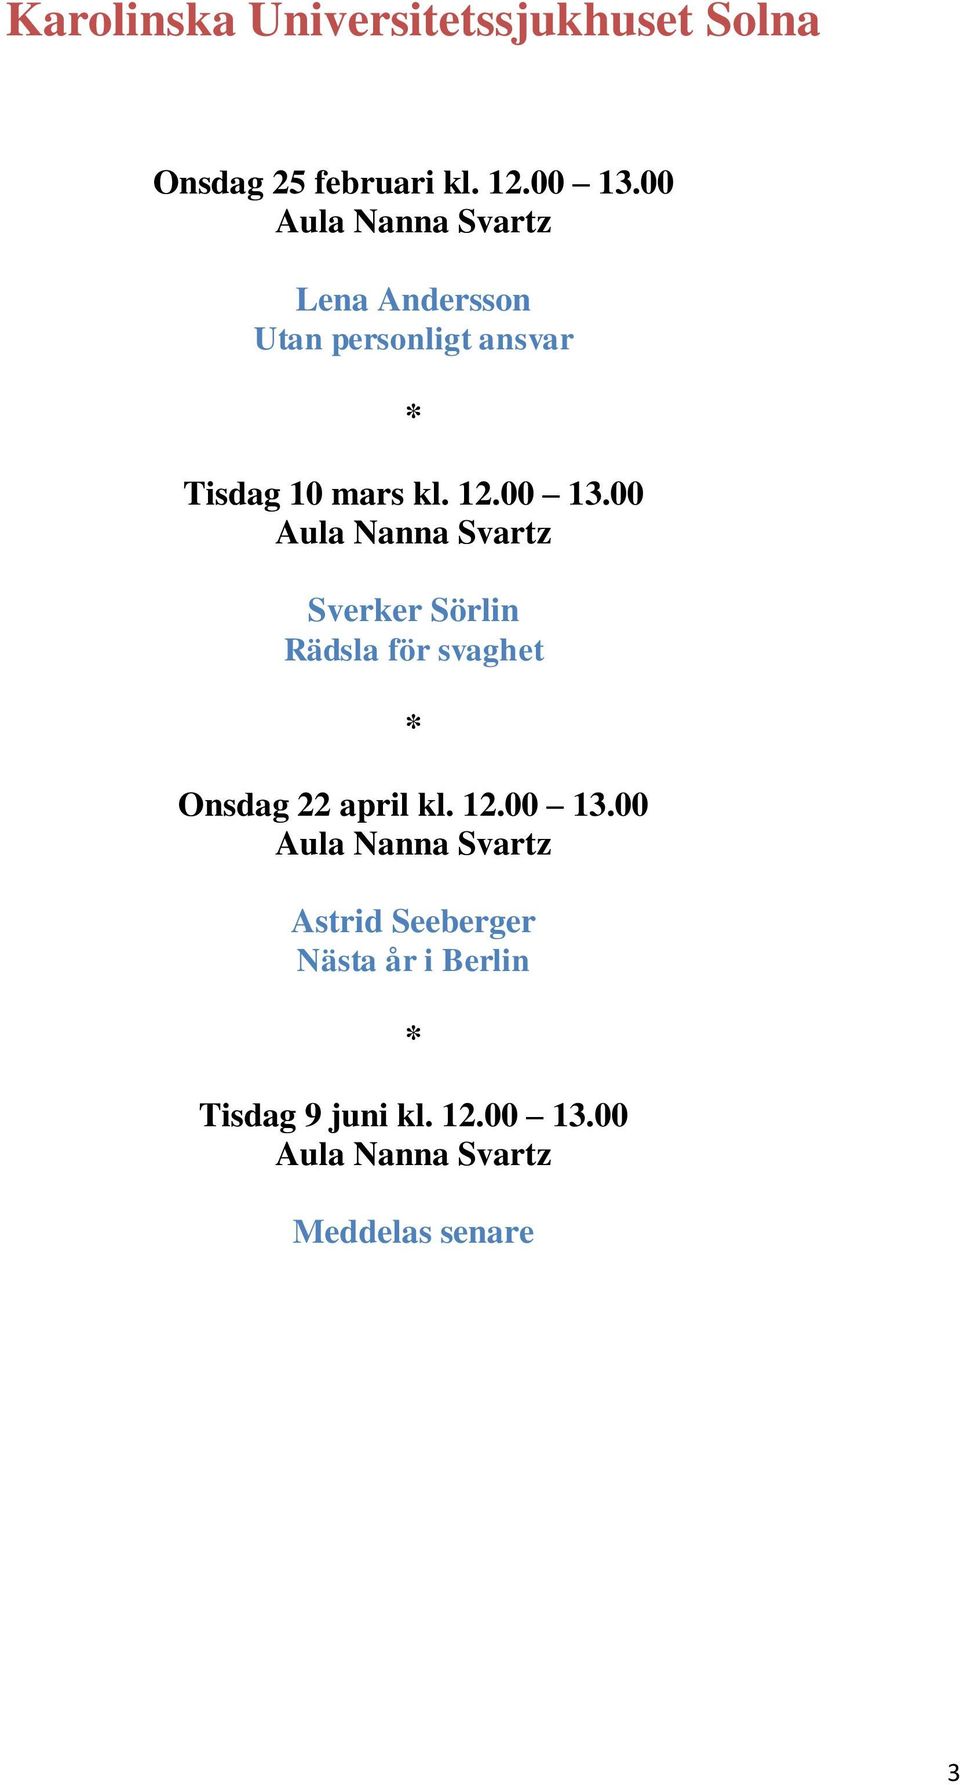 00 Aula Nanna Svartz Sverker Sörlin Rädsla för svaghet Onsdag 22 april kl. 12.00 13.